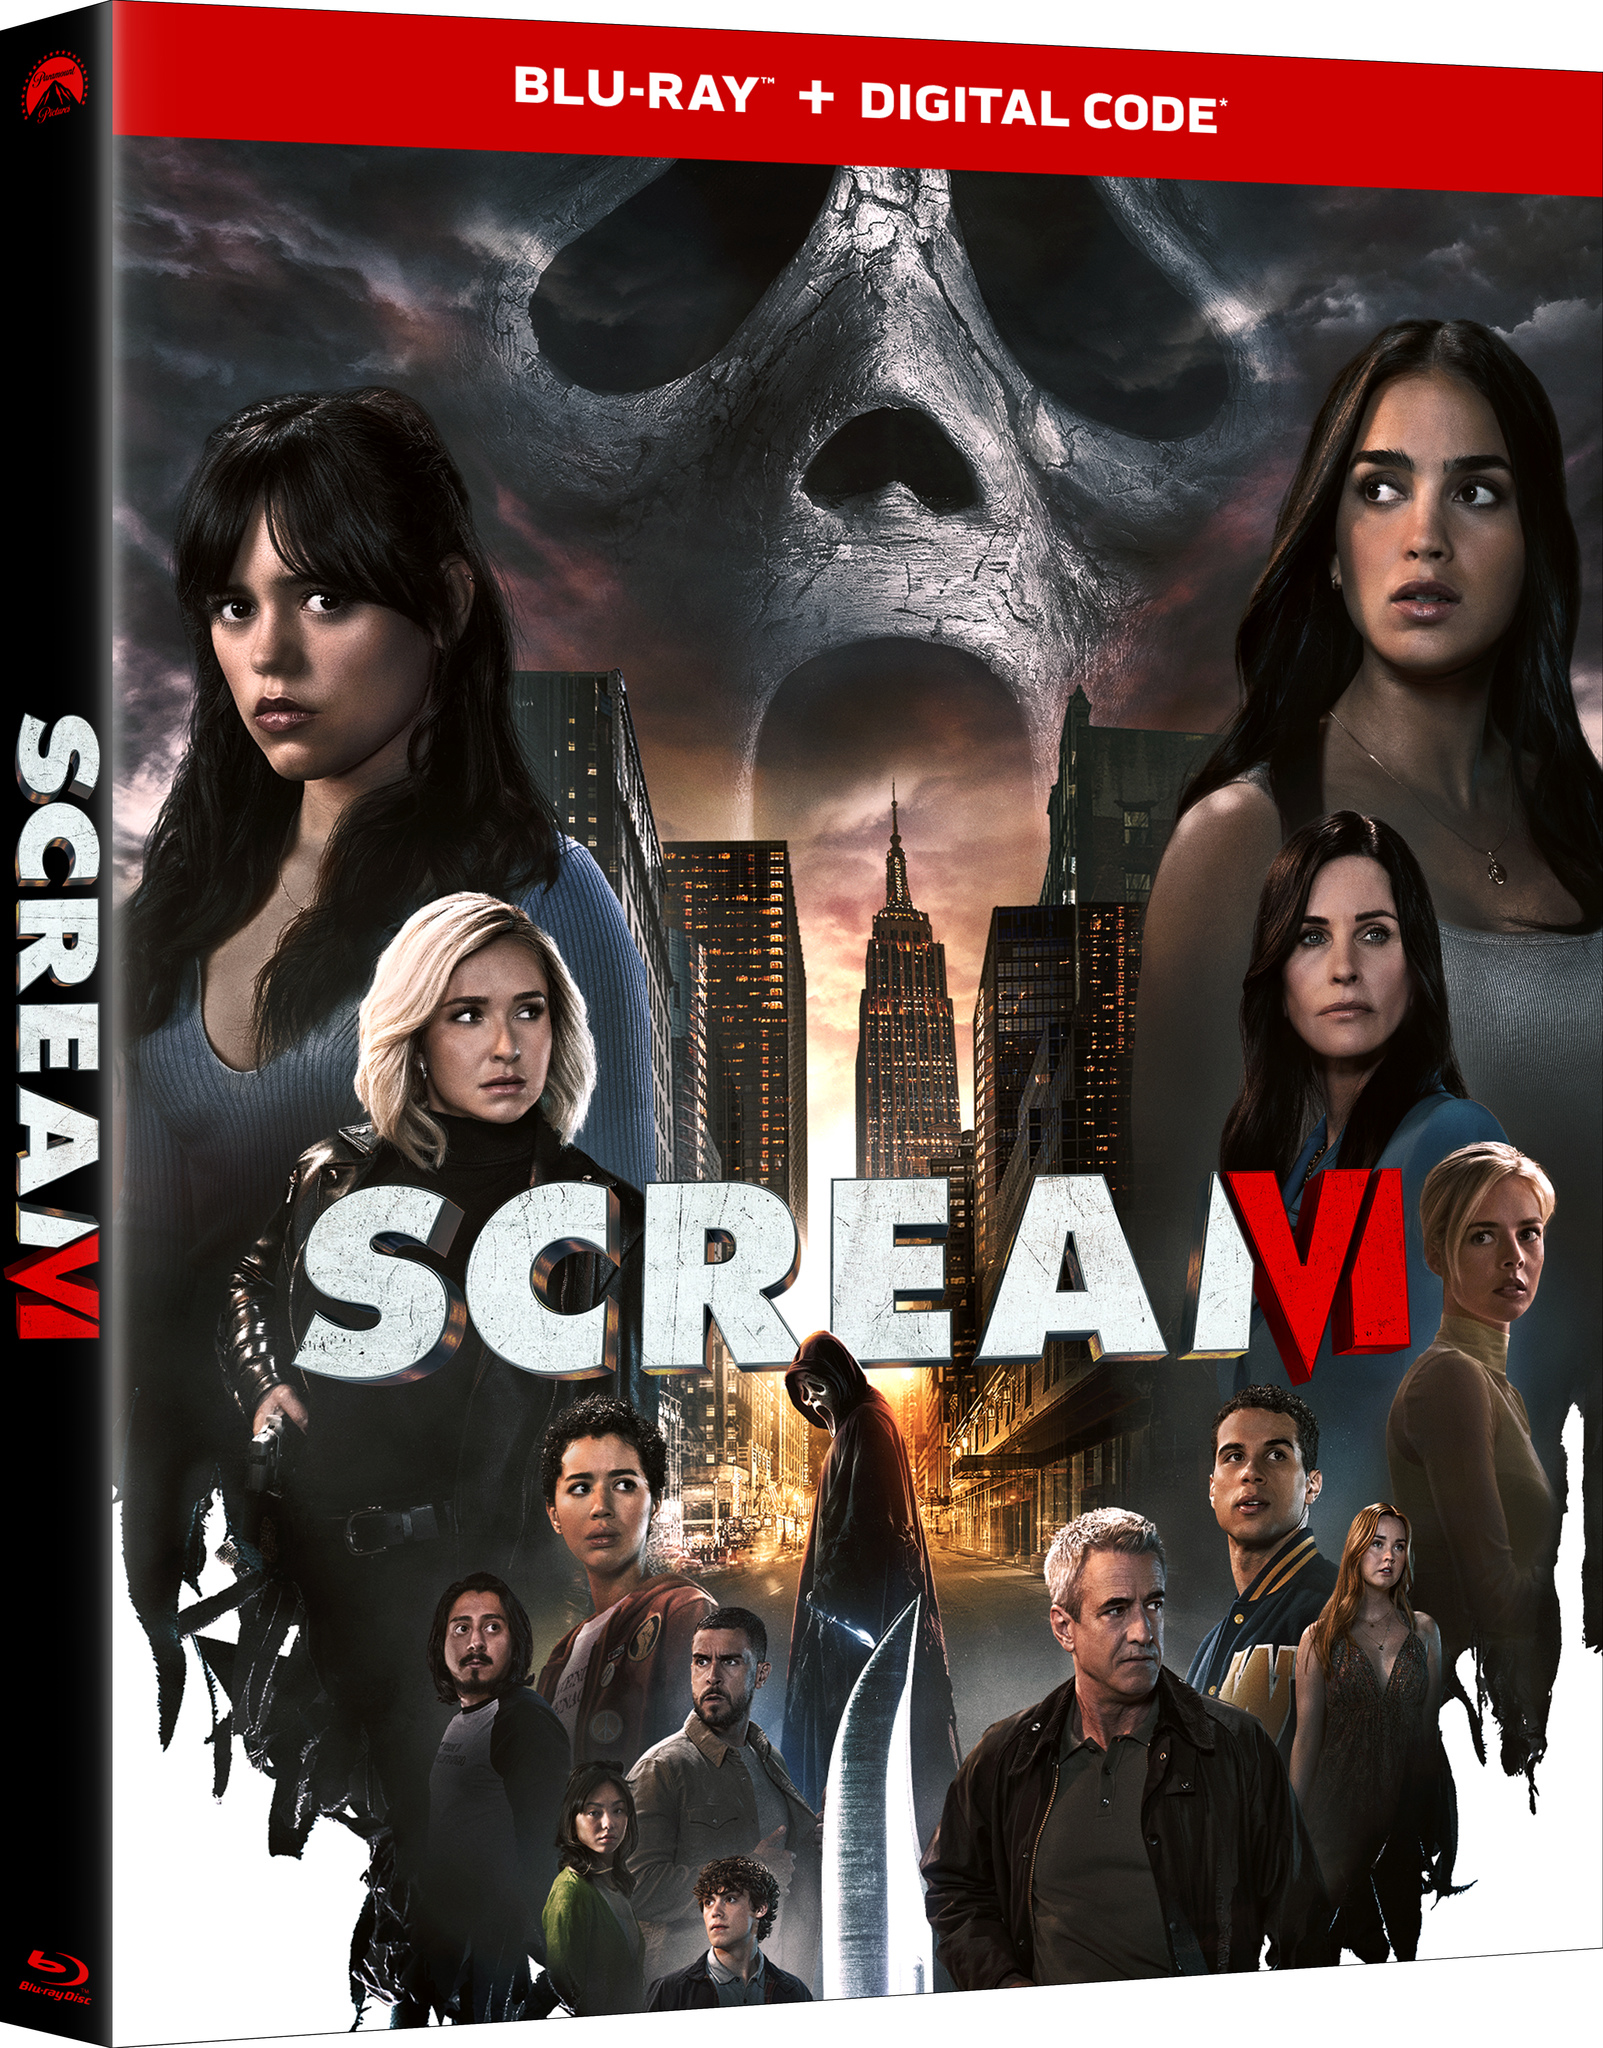 Watch Scream VI On Digital